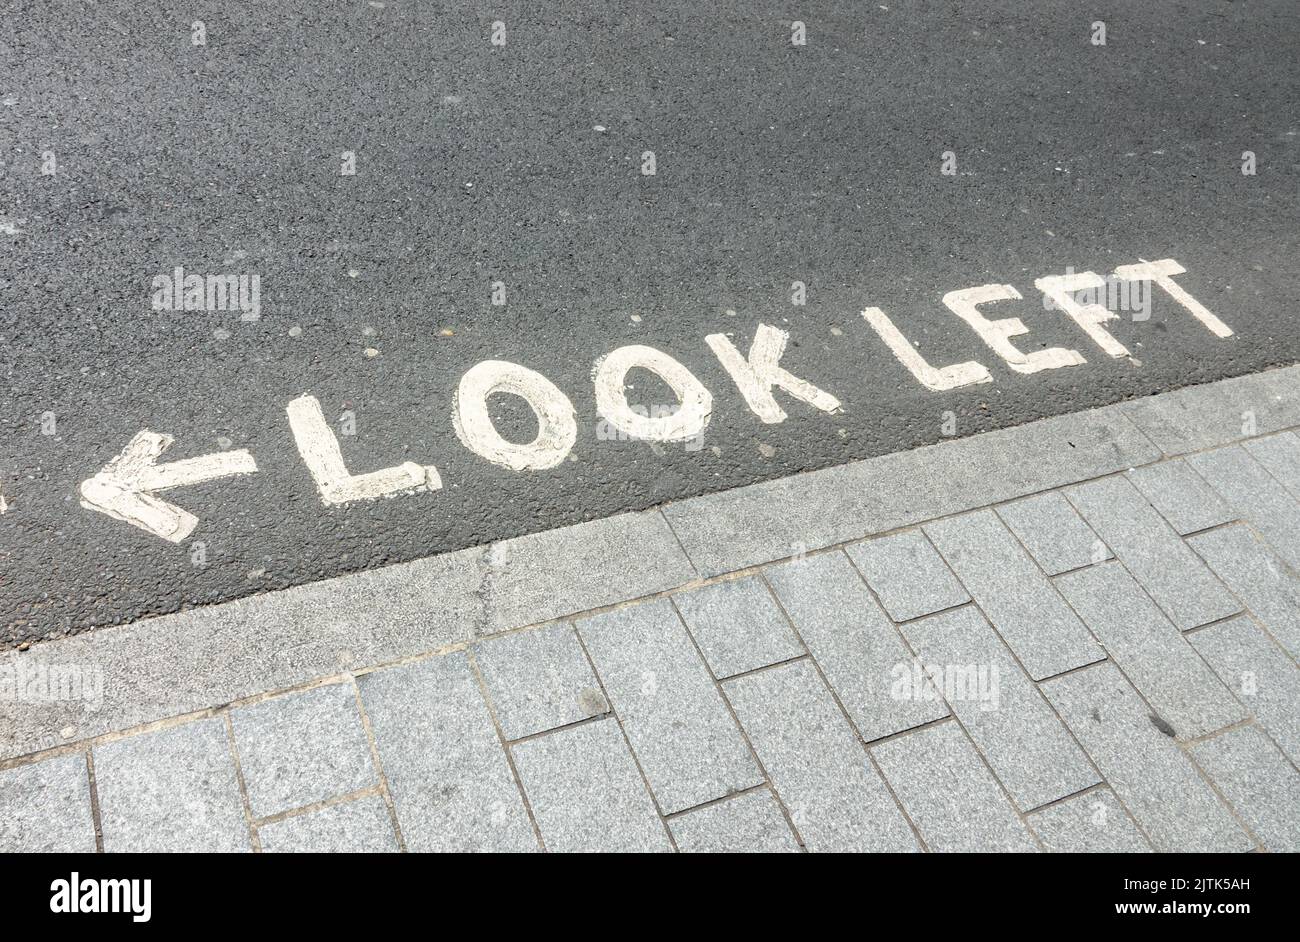 Mire a la izquierda, escrito en un cruce peatonal en Londres, Reino Unido Foto de stock